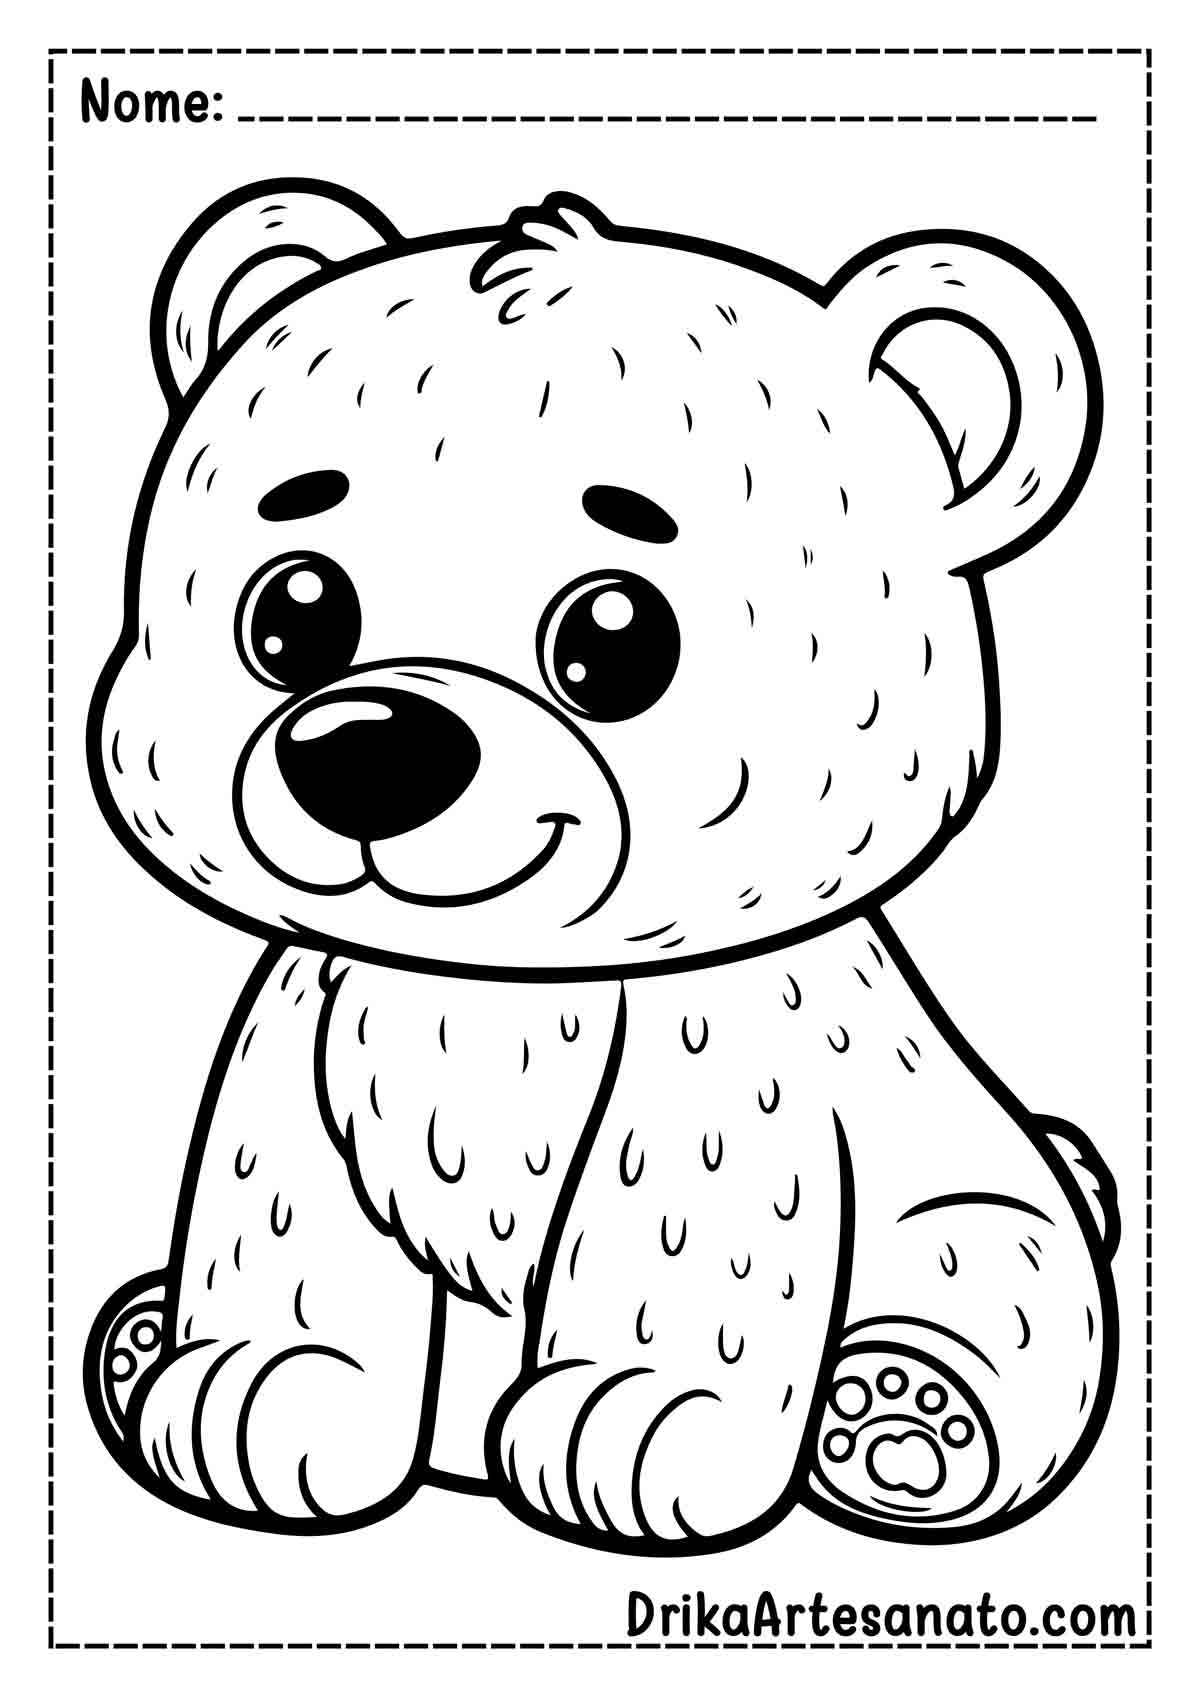 Desenho de Urso Fofo para Imprimir